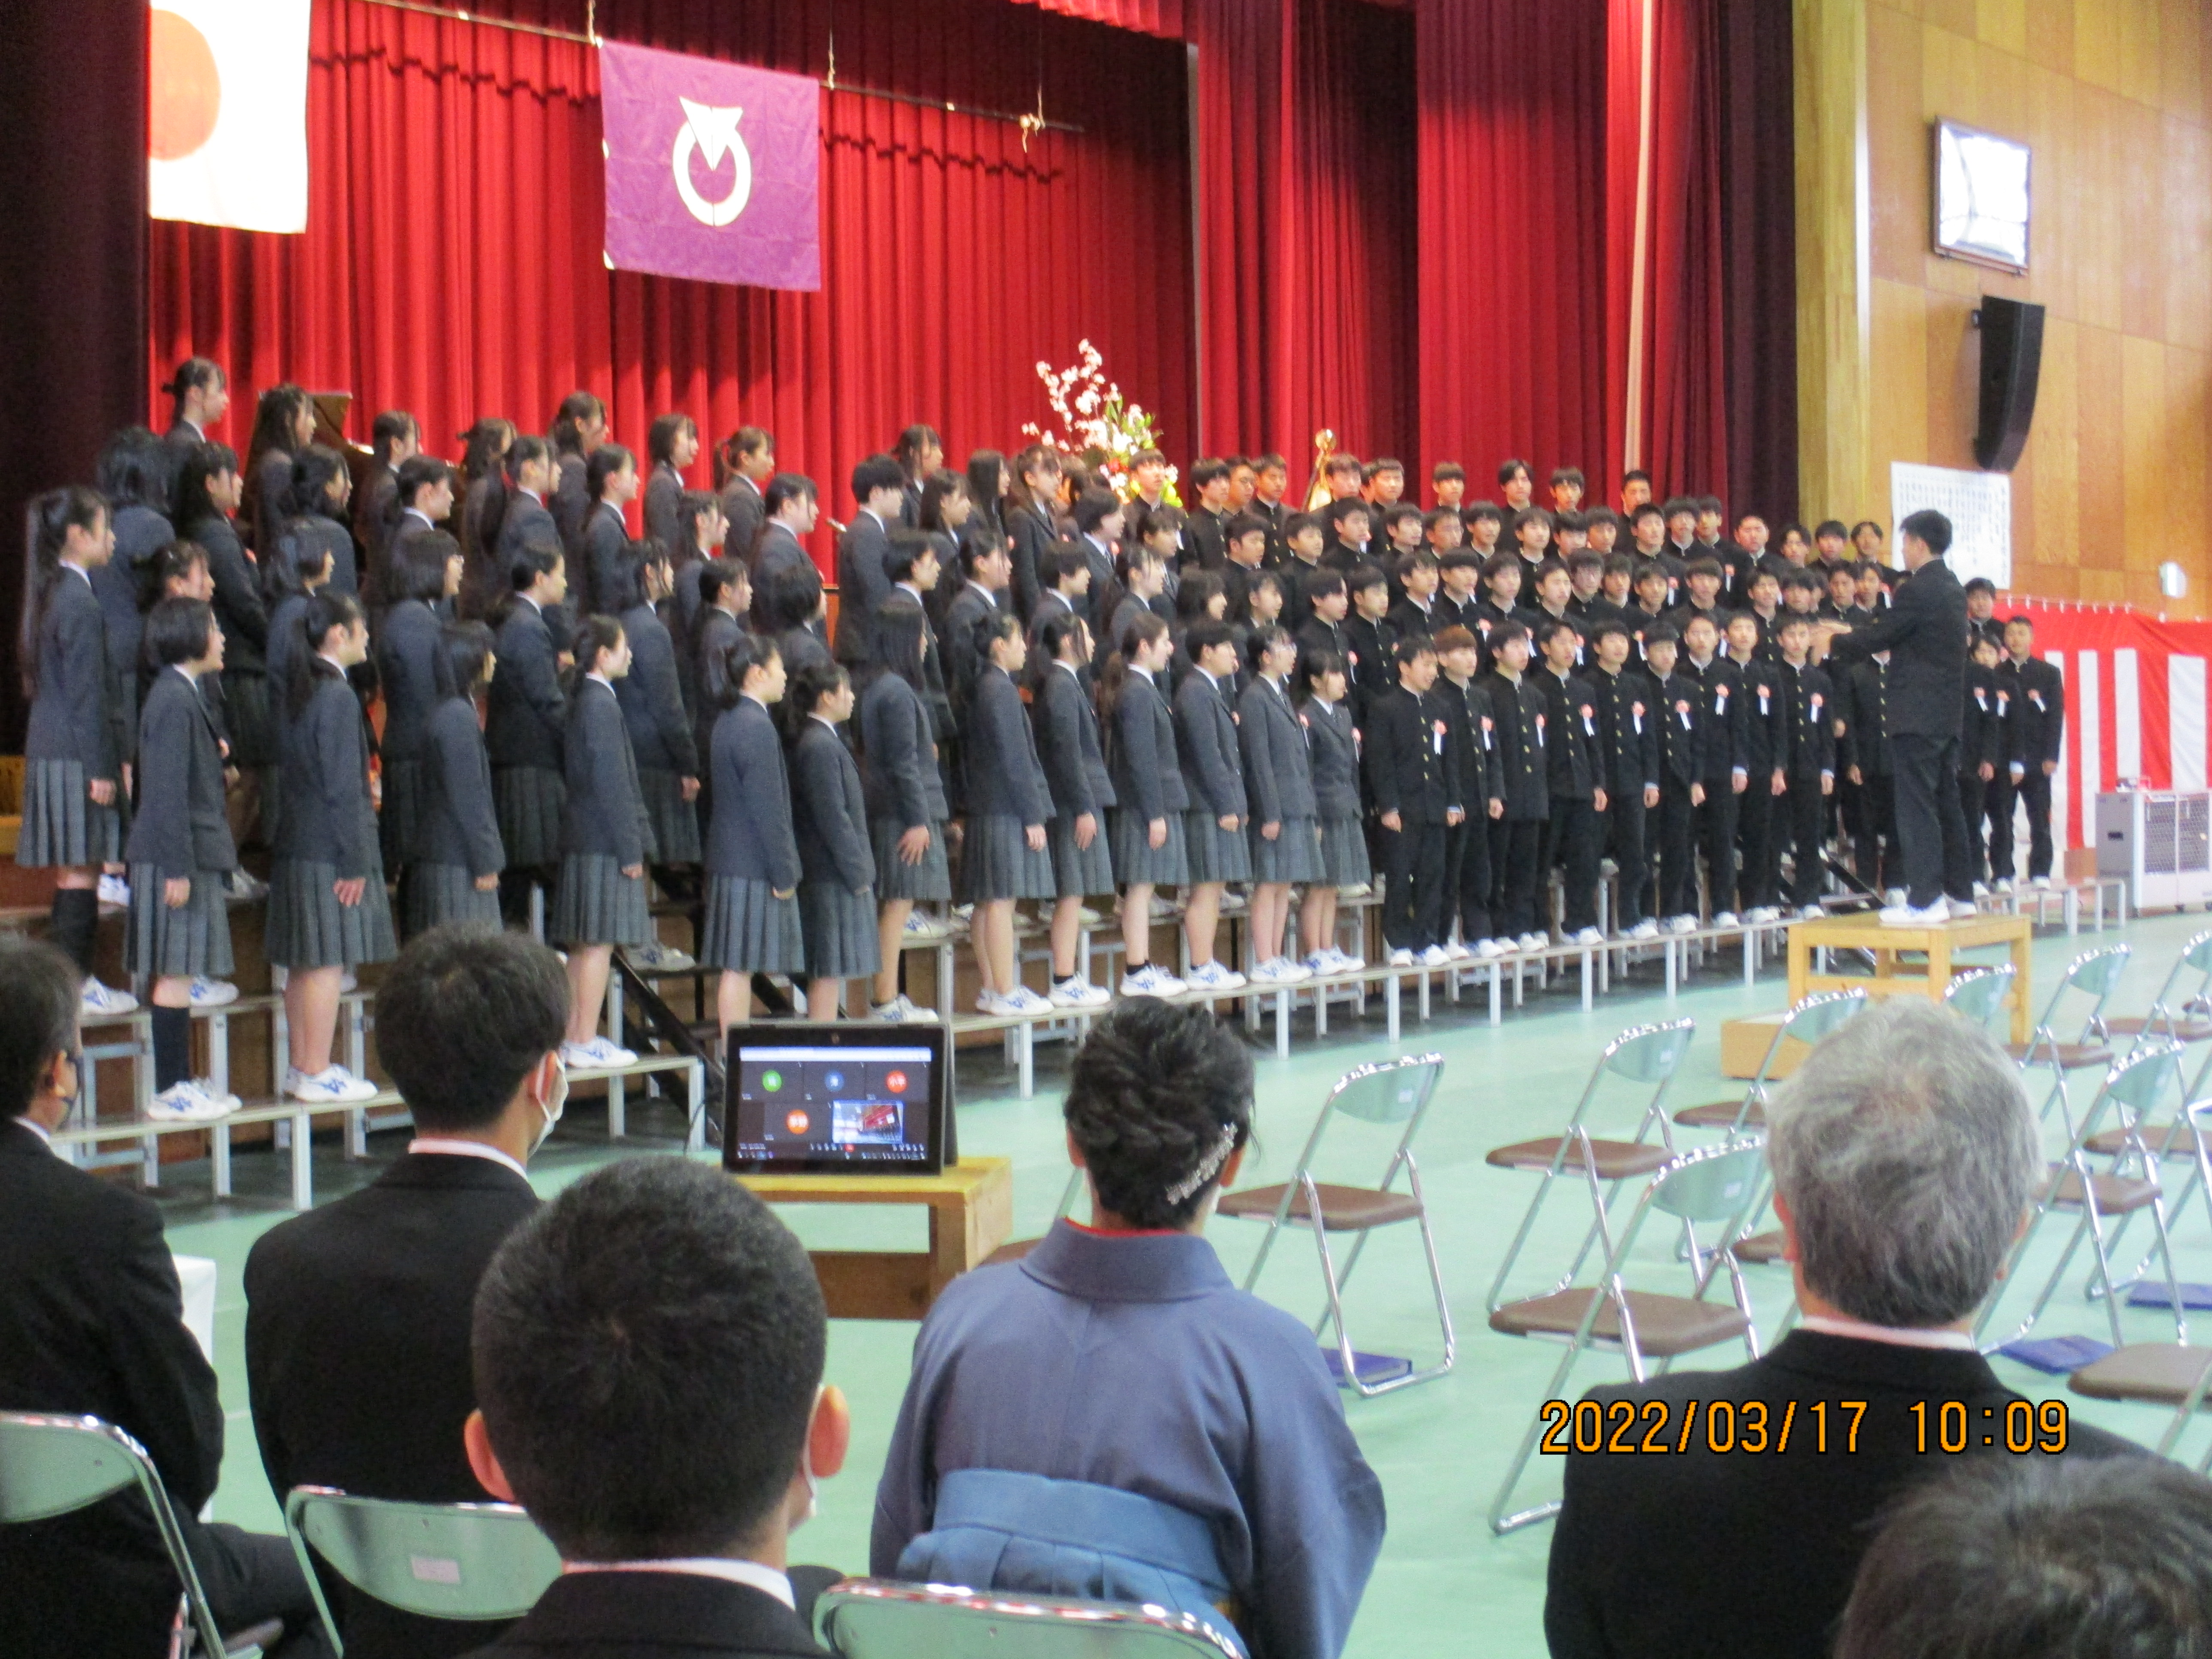 卒業証書授与式での卒業生合唱の様子の画像